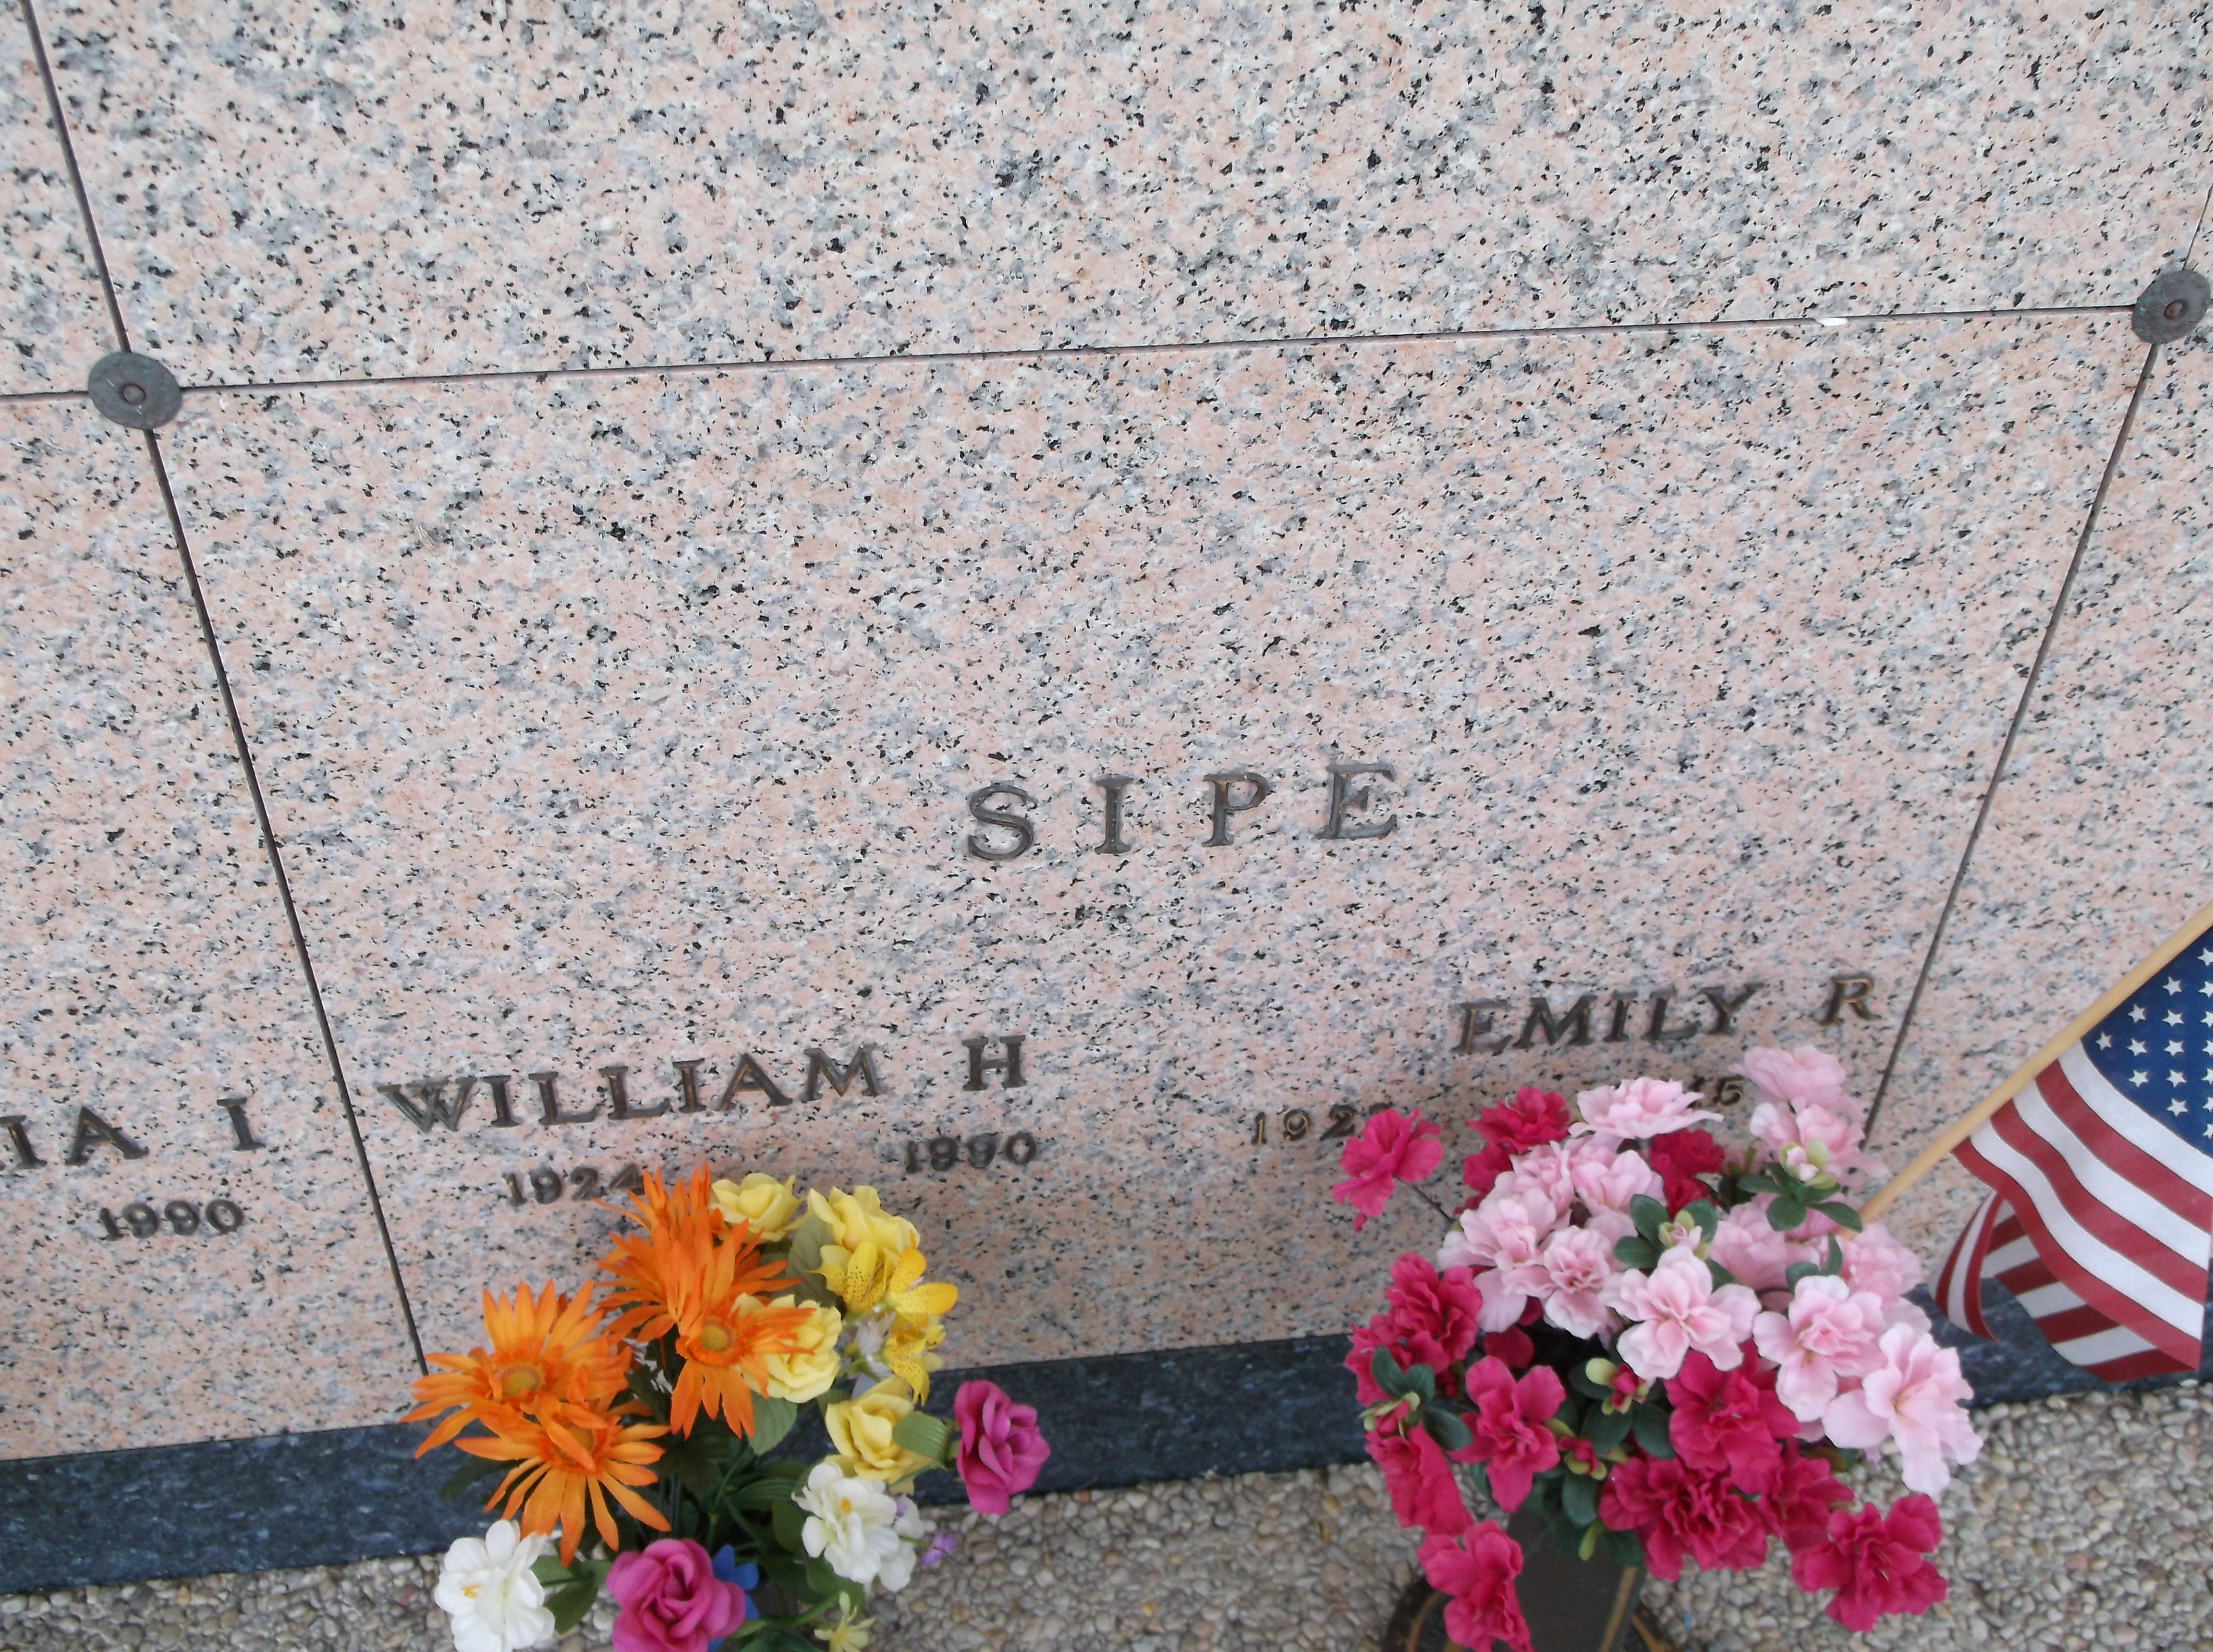 William H Sipe